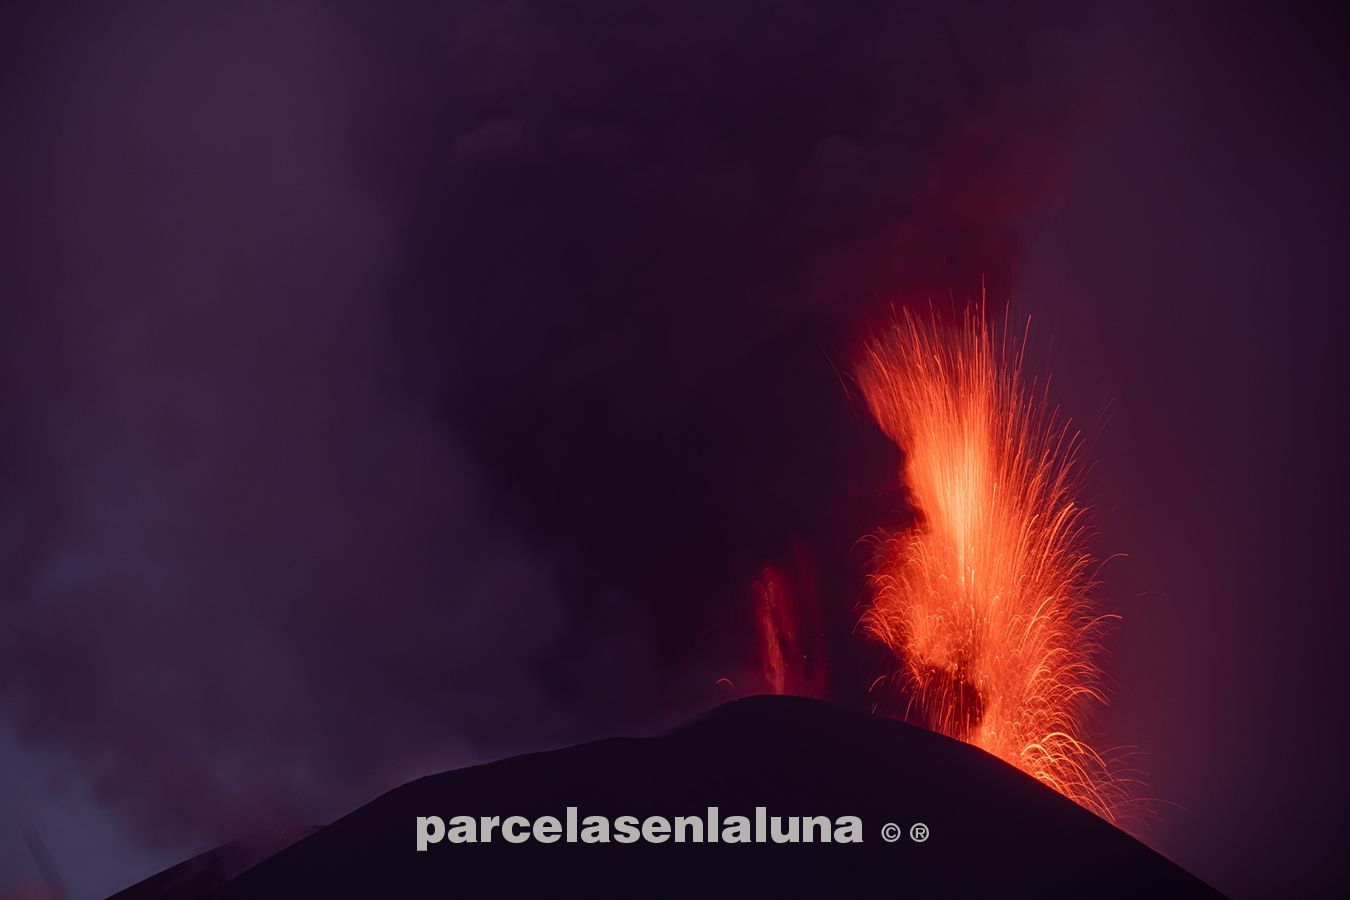 volcán cumbre vieja, isla de la palma